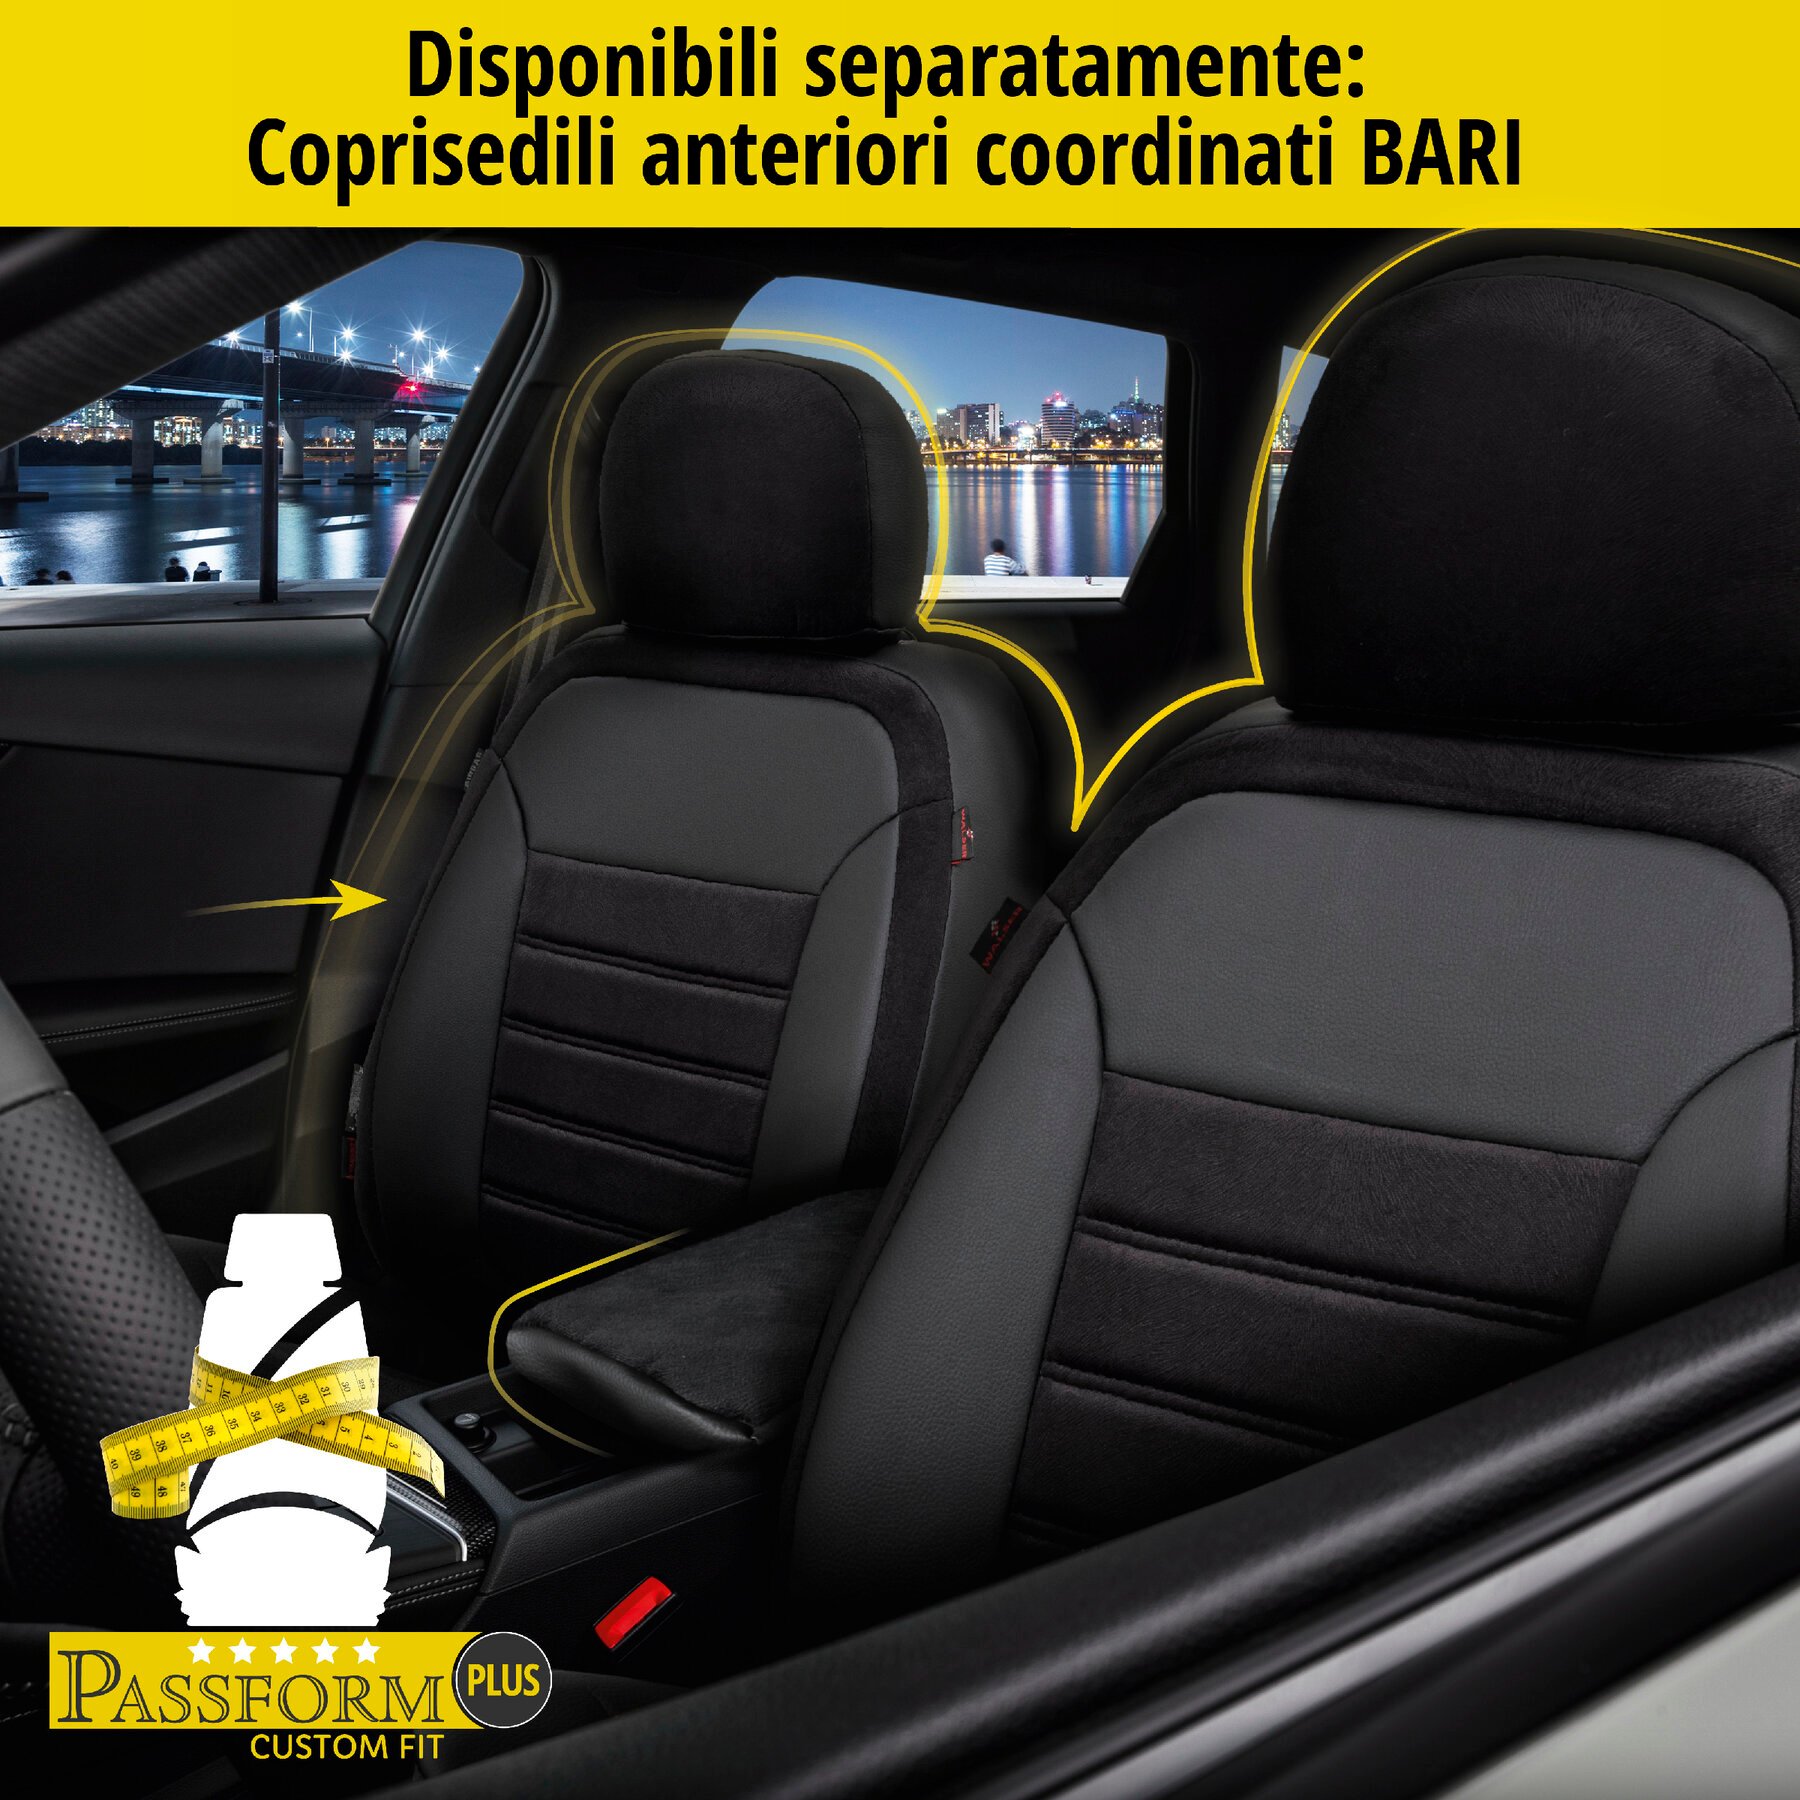 Coprisedili Bari per VW Golf 7 Comfortline 08/2012-Oggi, 1 coprisedili posteriore per sedili sportivi